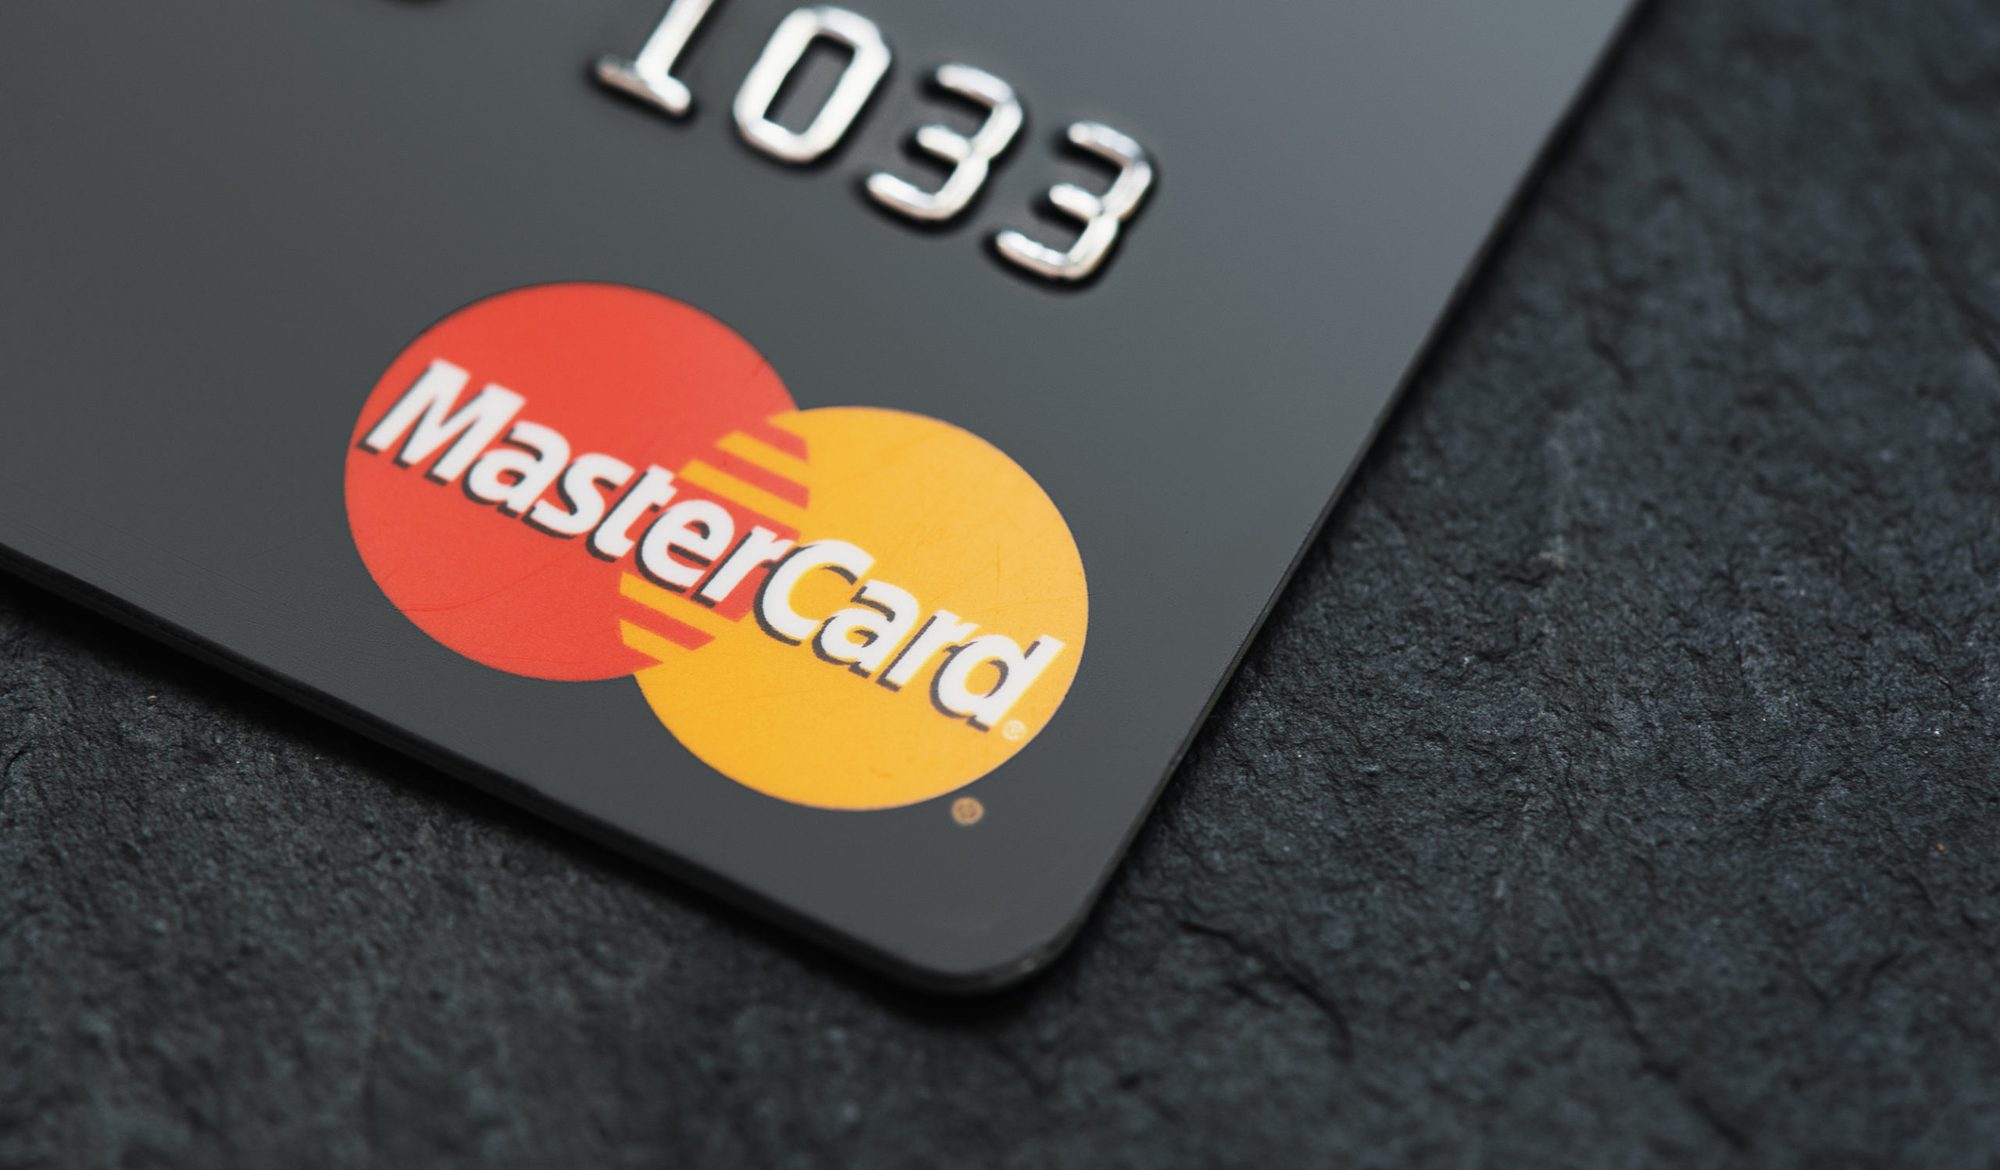 Mastercard đang thử nghiệm công nghệ mới cho phép người mua hàng thanh toán chỉ bằng khuôn mặt hoặc tay của họ tại điểm thanh toán. Ảnh: @AFP.